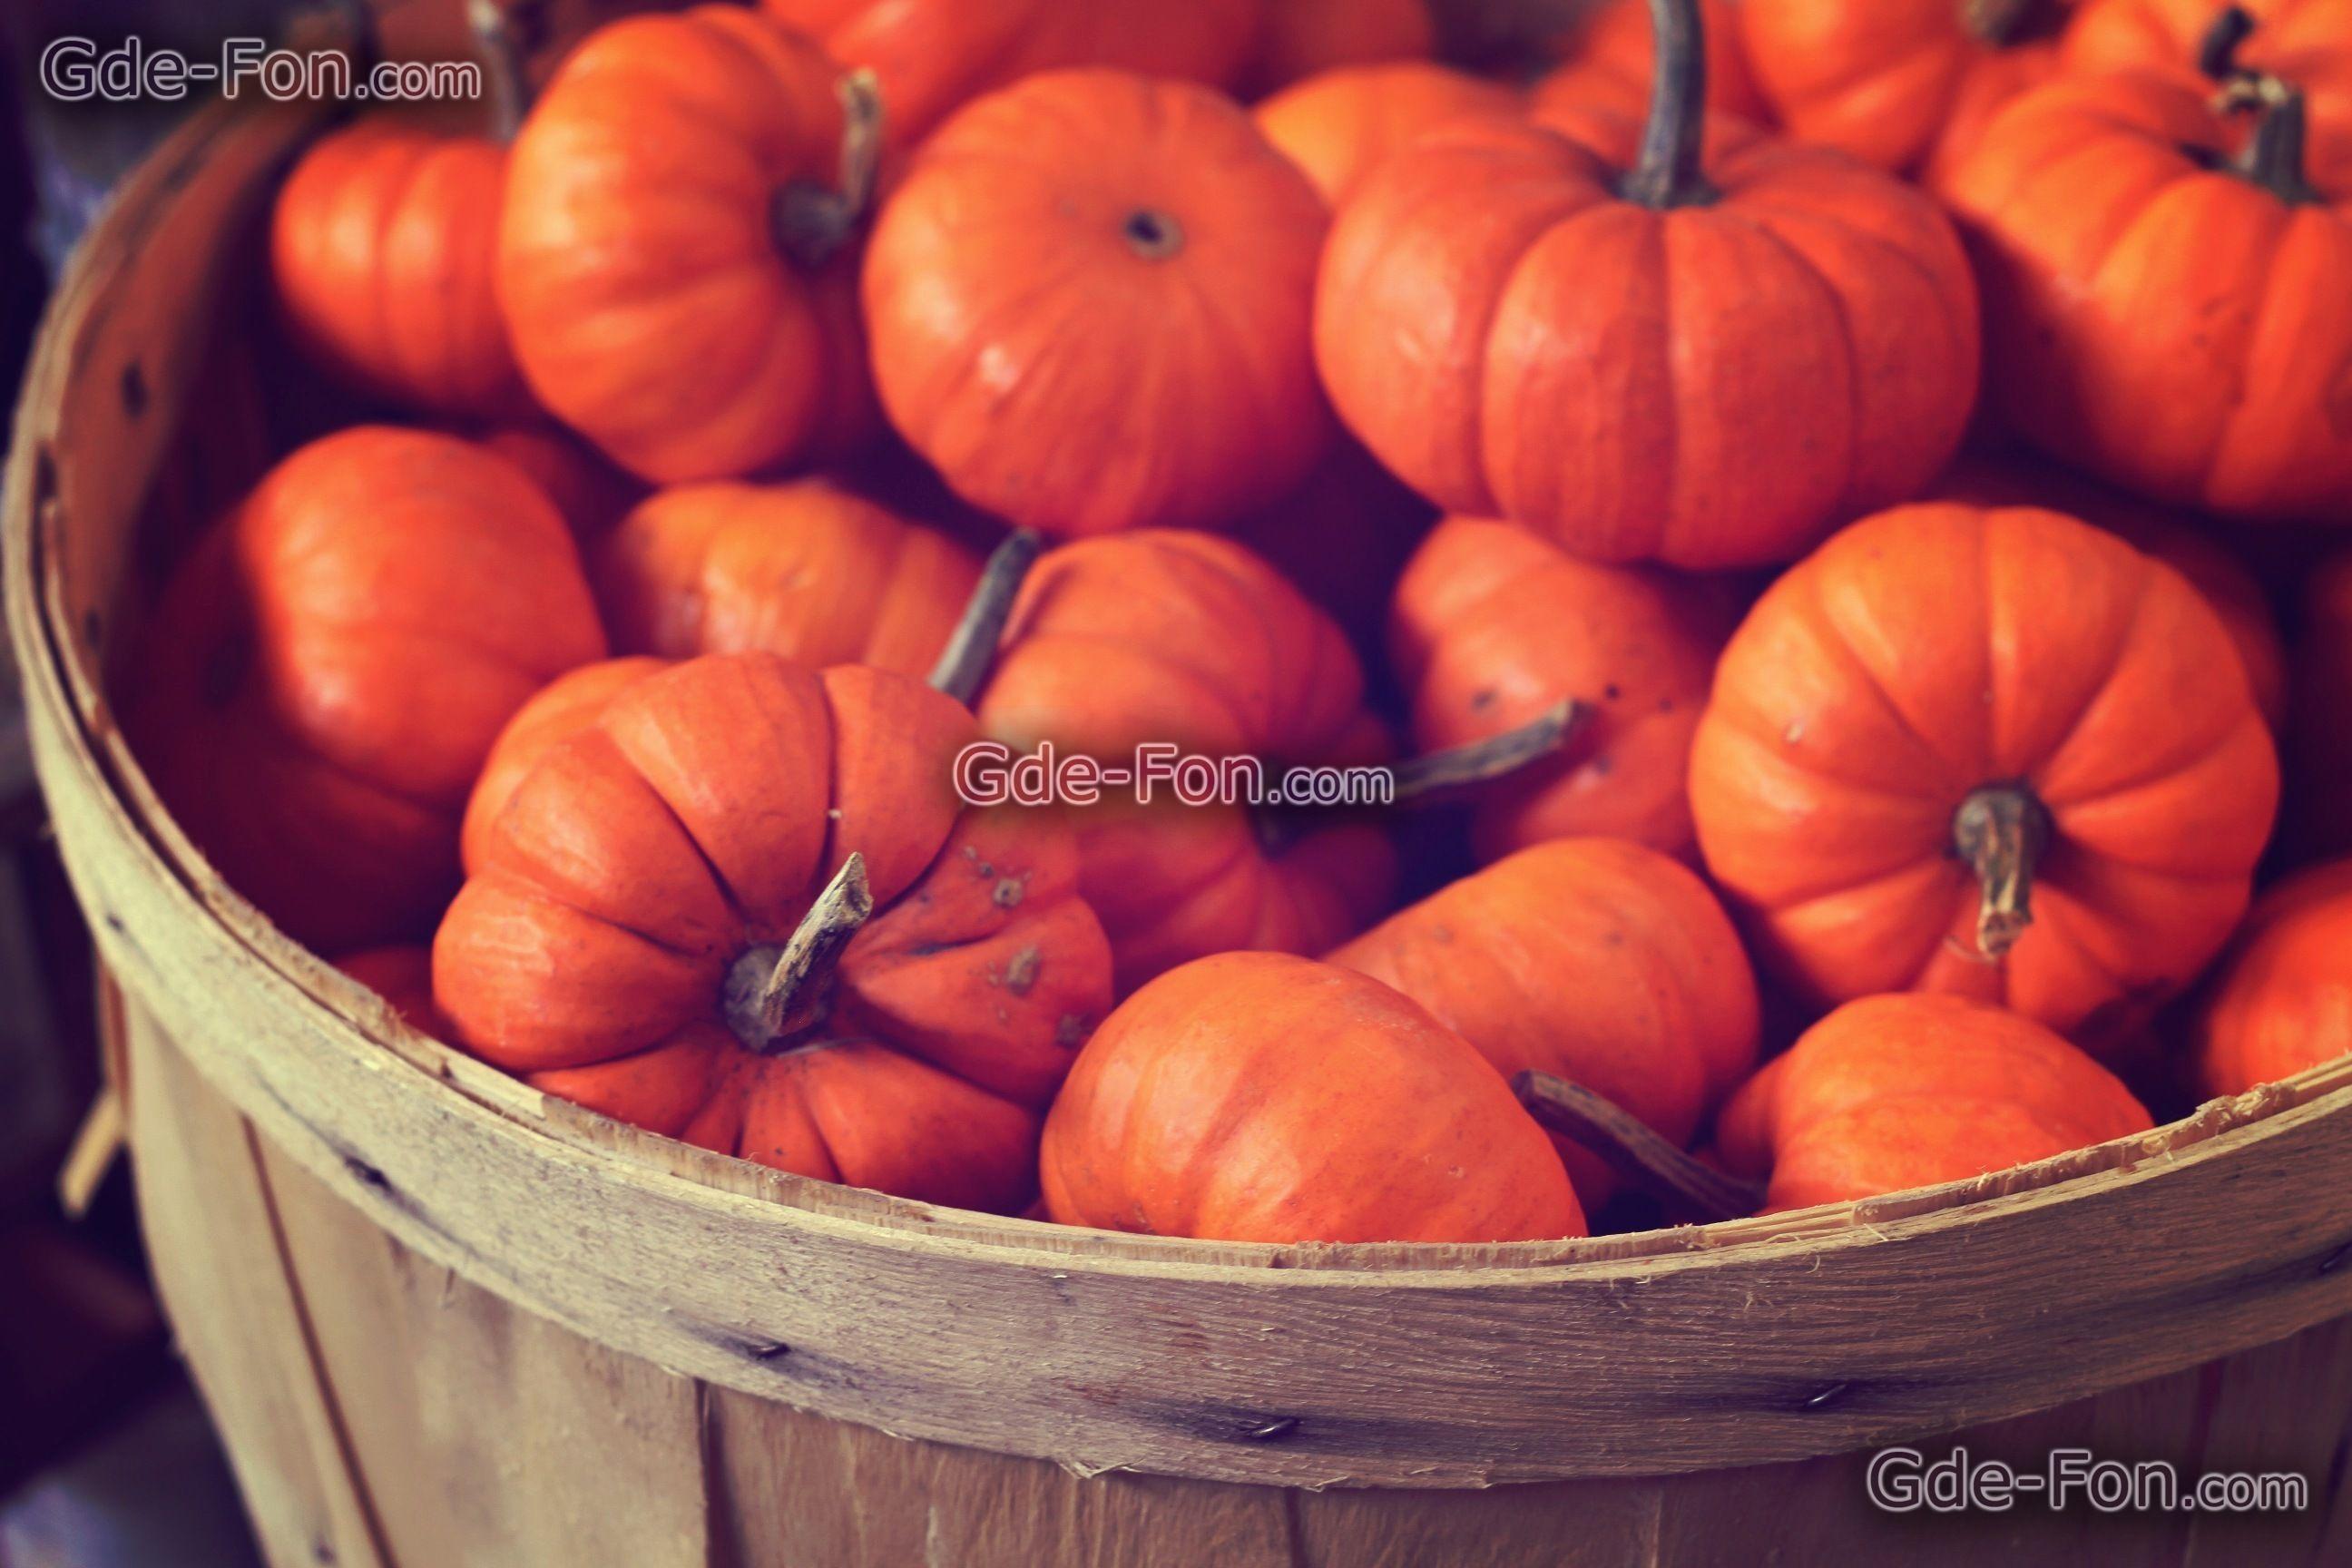 pumpkin desktop wallpaper